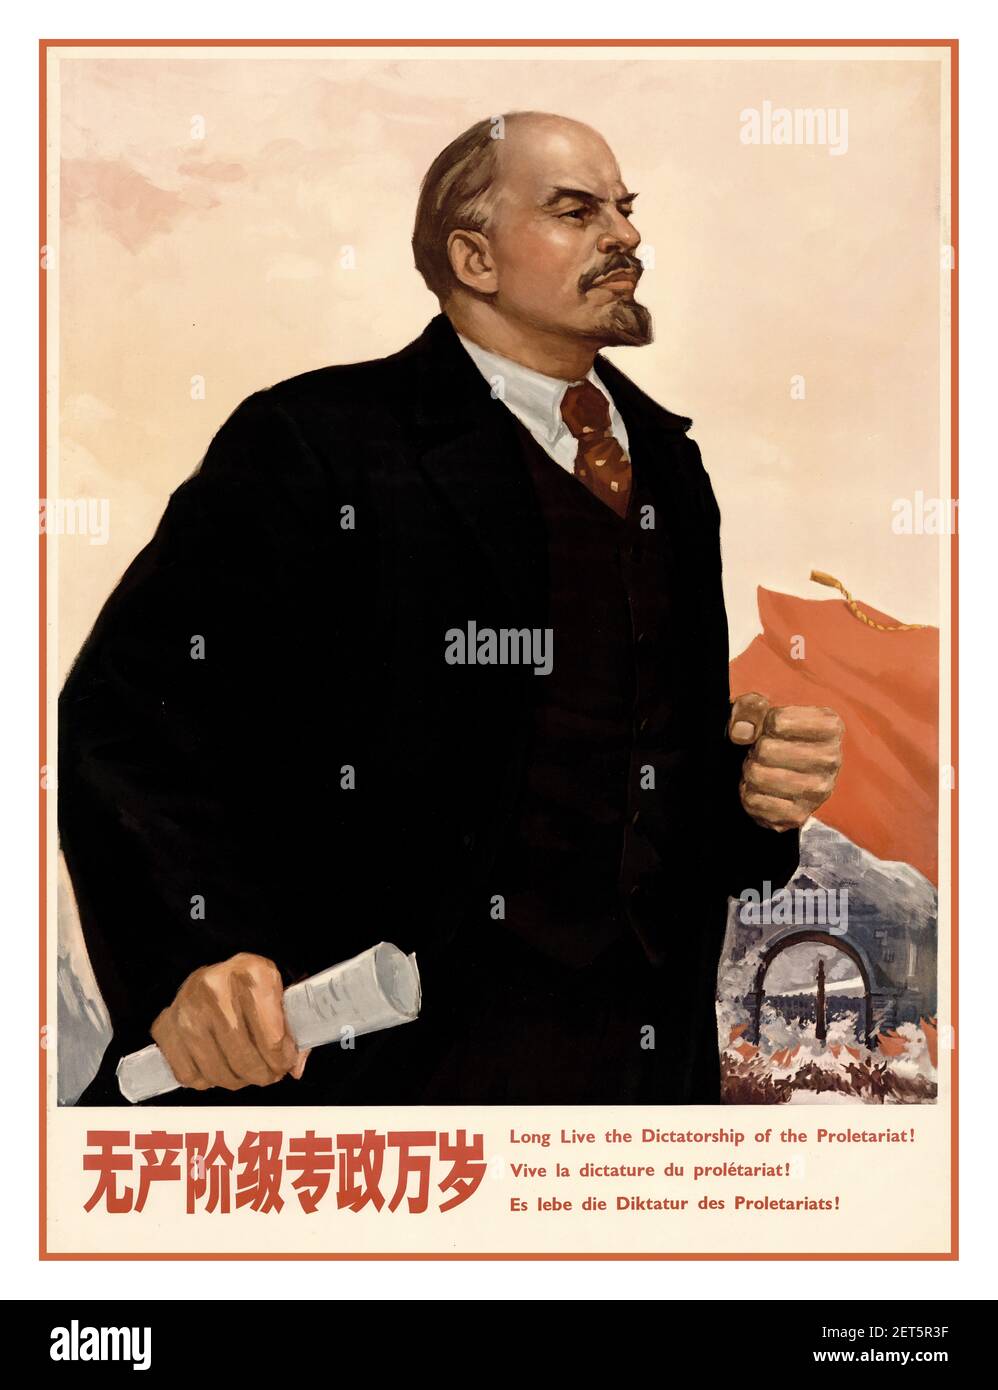 1980s chinesisches Propagandaplakat..zum Beispiel illustrierend - Lenin - ‘Es lebe die Diktatur des Proletariats’ ! Kommunistisches China 1986. Stockfoto